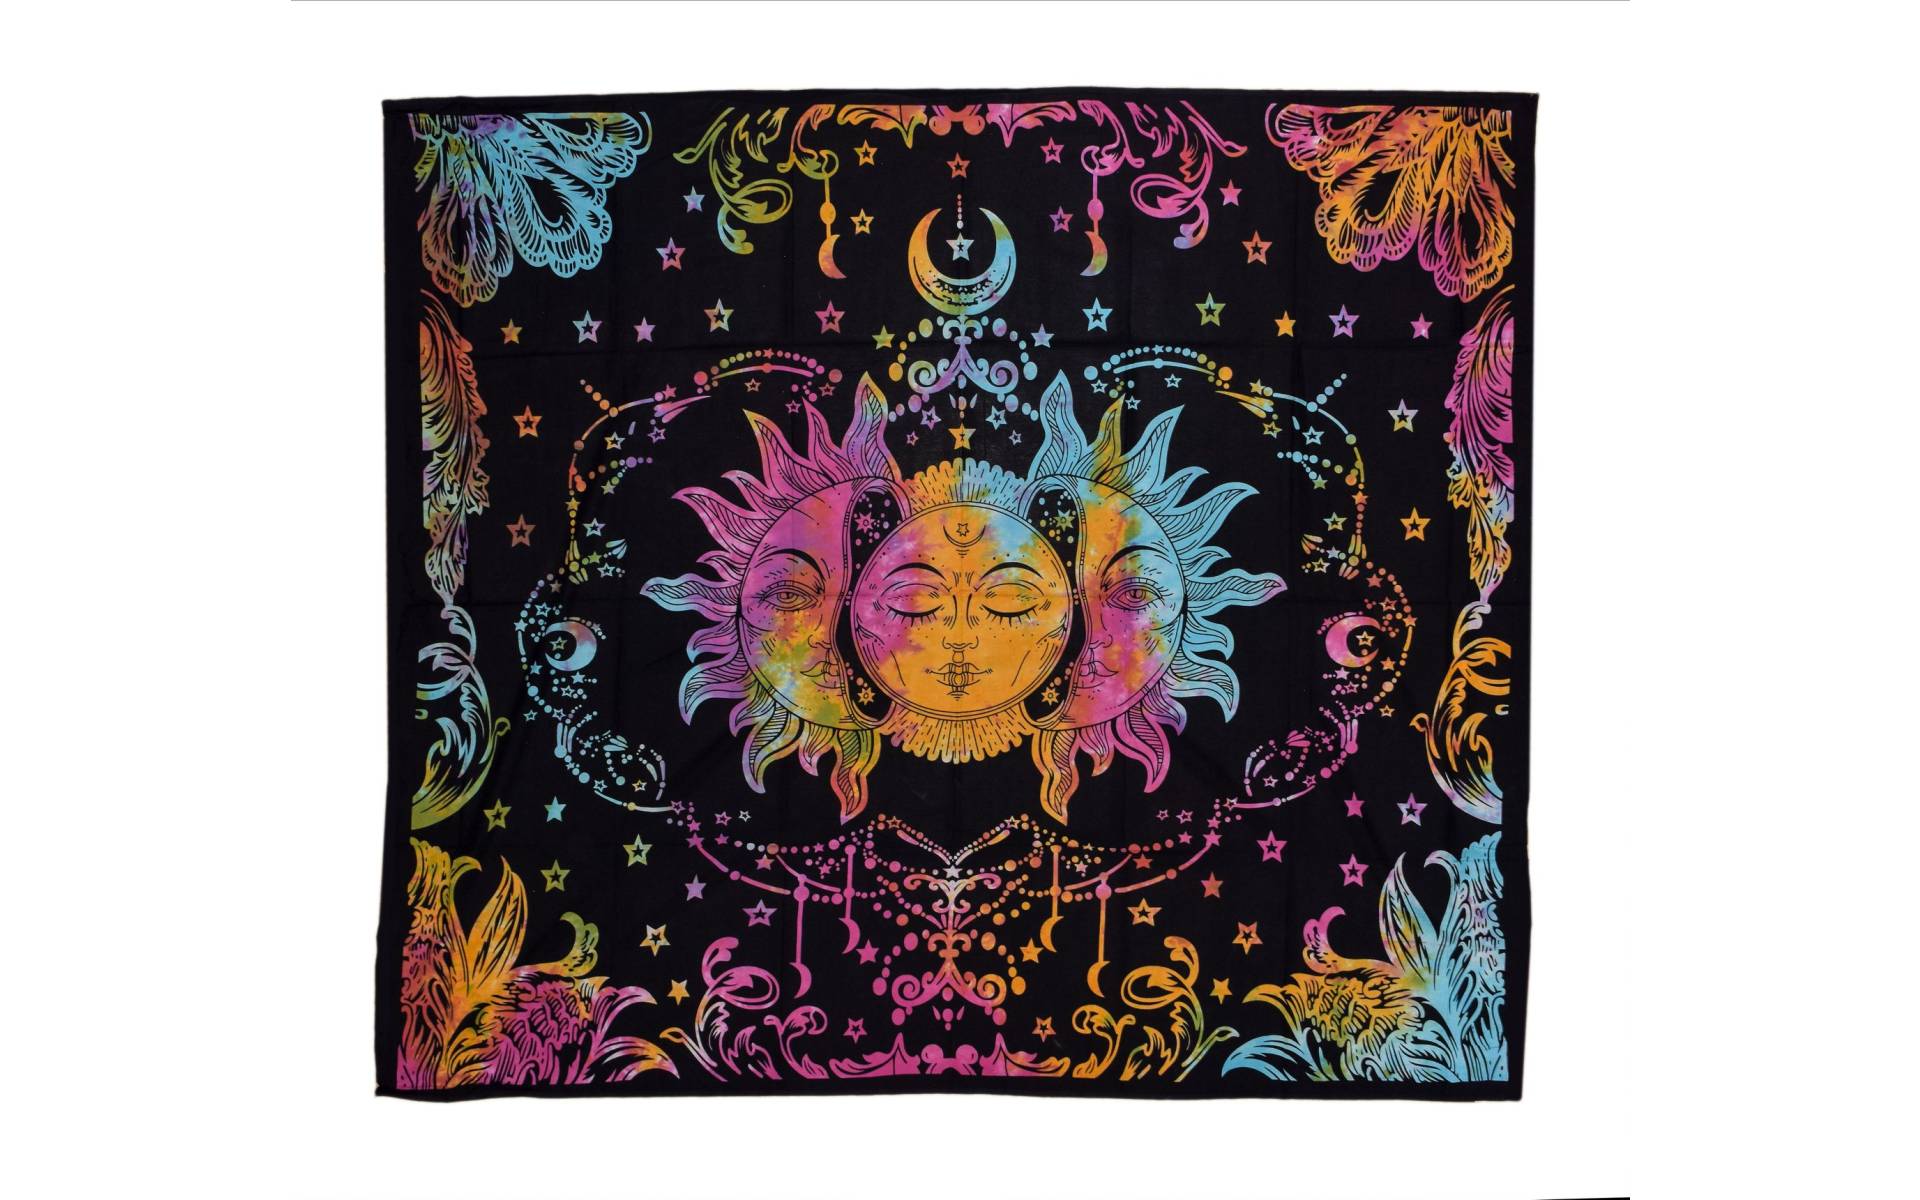 Prikrývka na posteľ s potlačou slnka a mesiaca, farebná batika 210x230cm